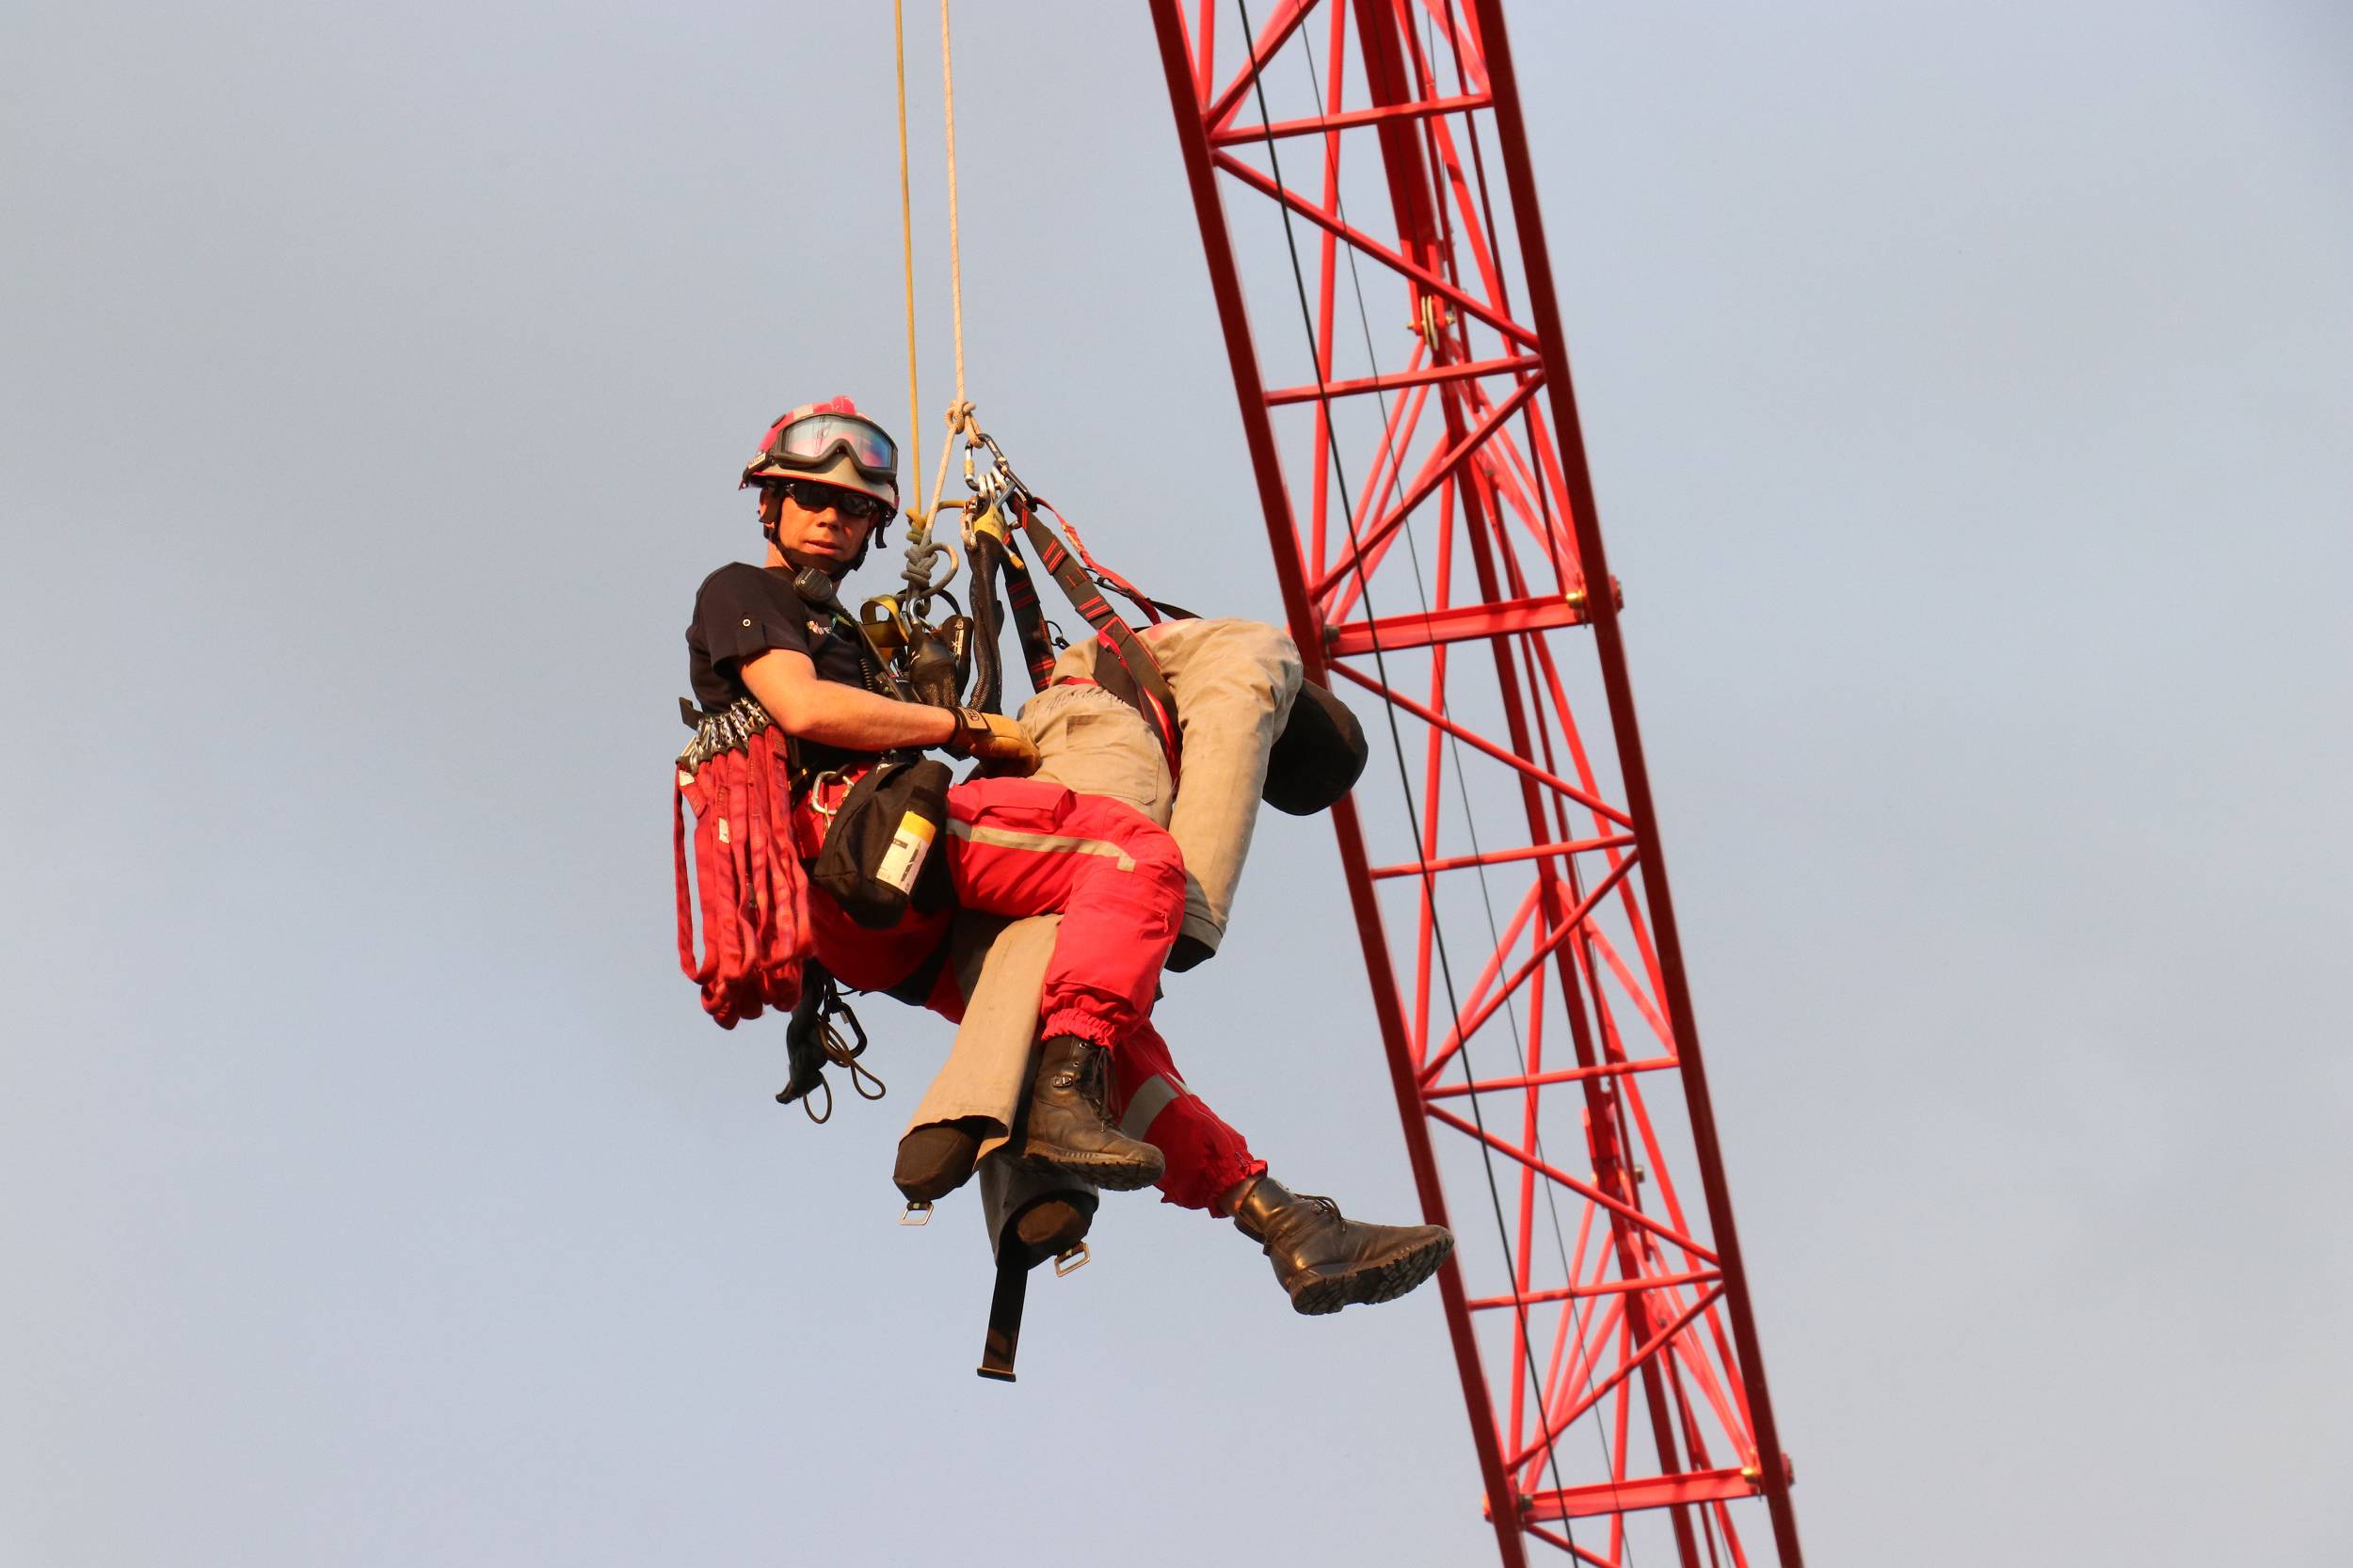 26.06.2020: Höhenretterübung: Person aus 30 Meter Höhe von Baukran abgeseilt